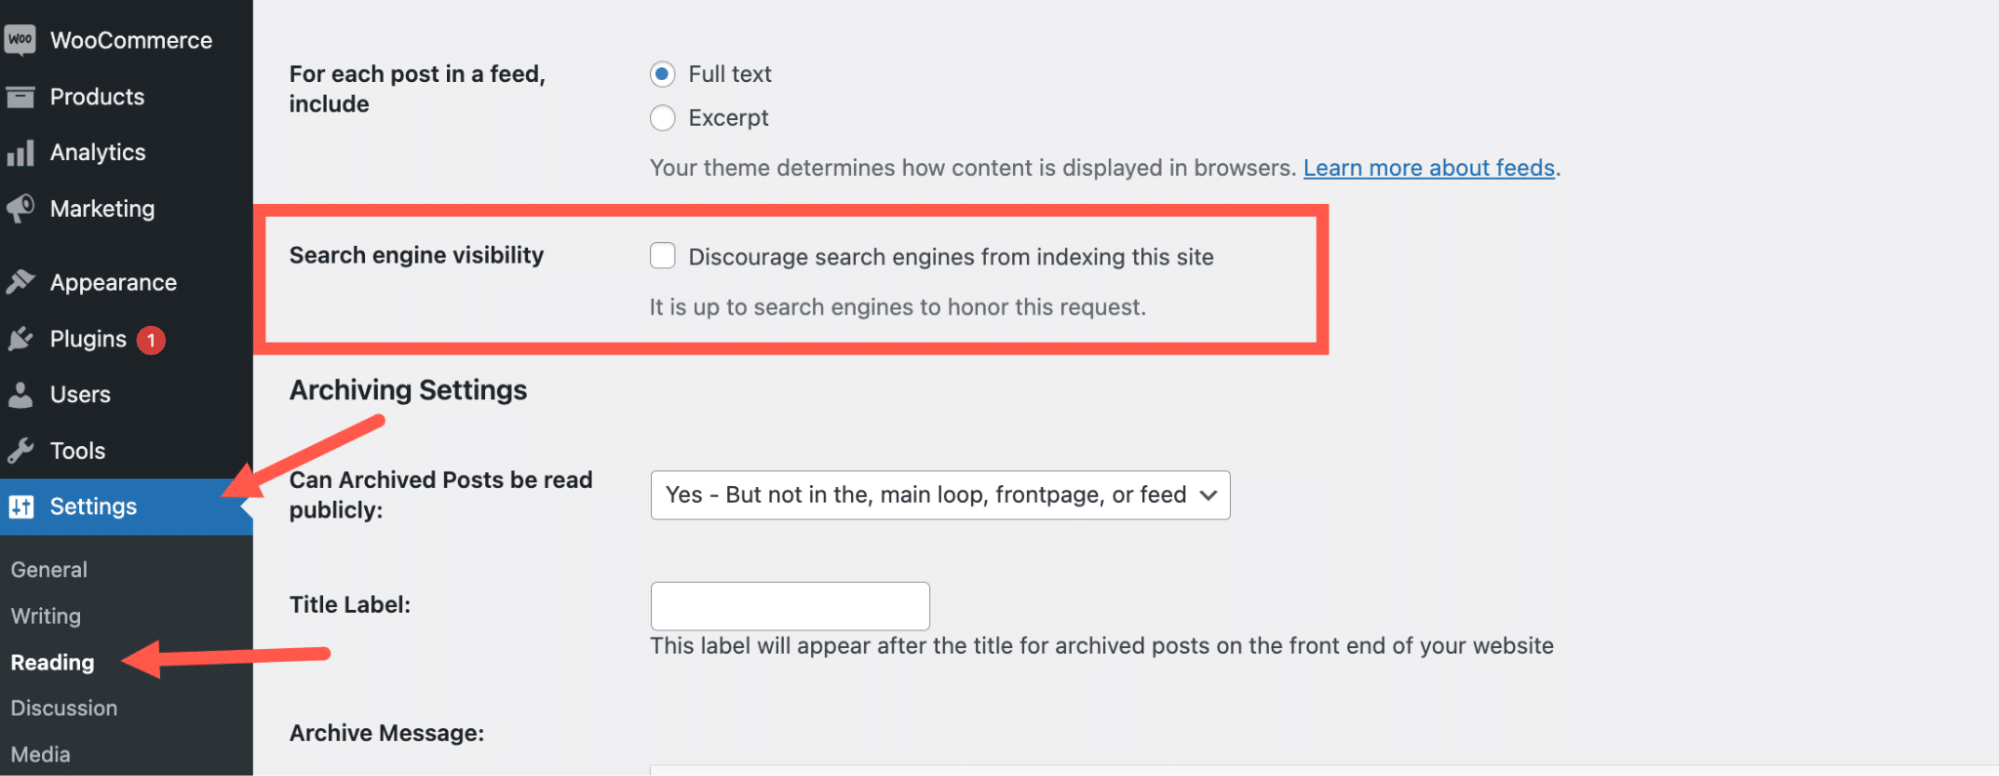 Pantalla de configuración de lectura de WordPress para disuadir a los motores de búsqueda de indexar el sitio resaltada